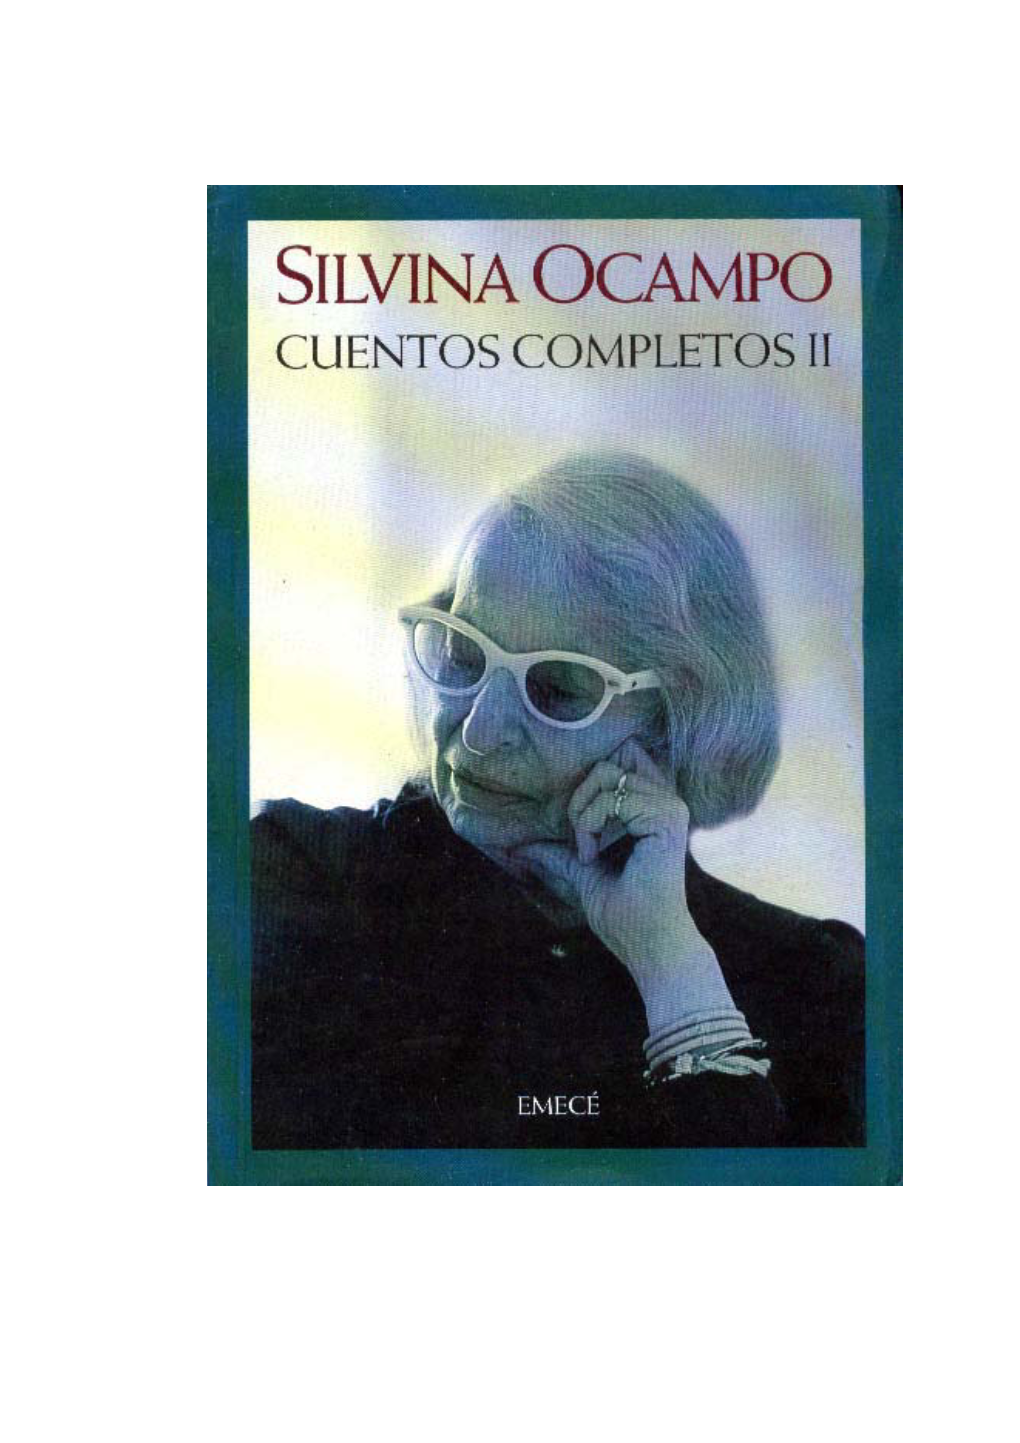 SILVINA OCAMPO – CUENTOS COMPLETOS (Vol. 2)